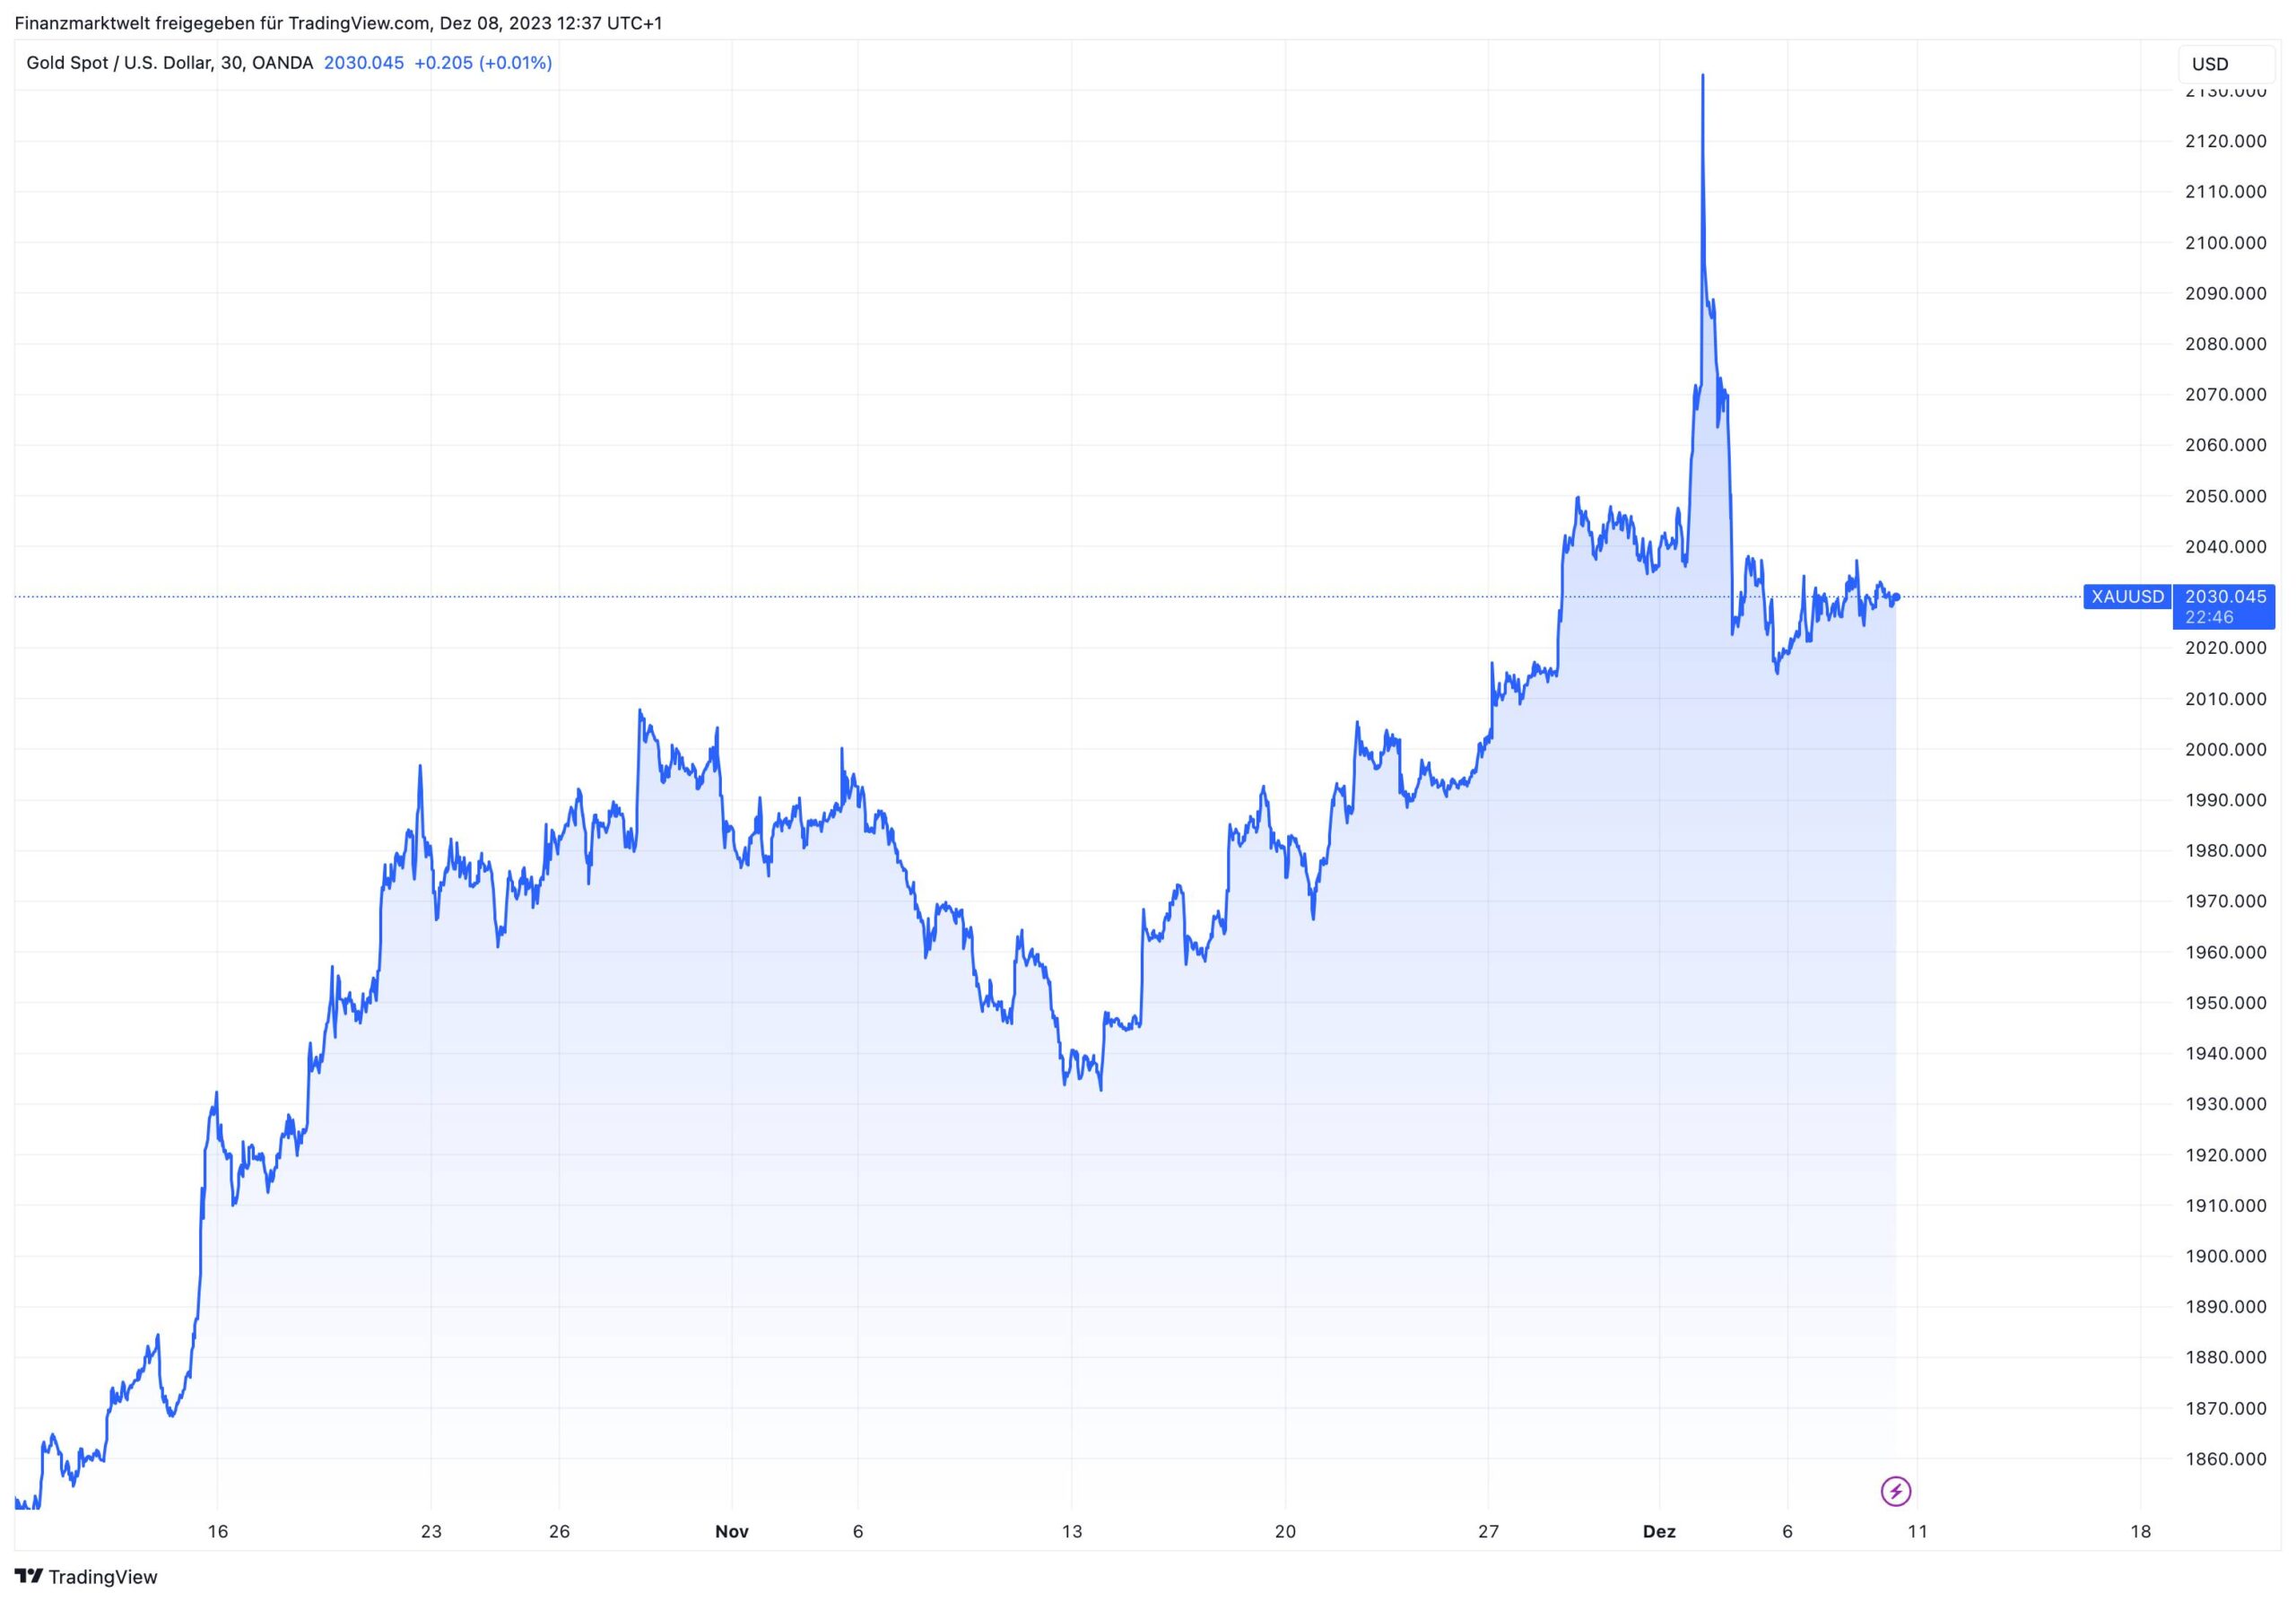 Grafik zeigt Kursverlauf im Goldpreis in den letzten acht Wochen